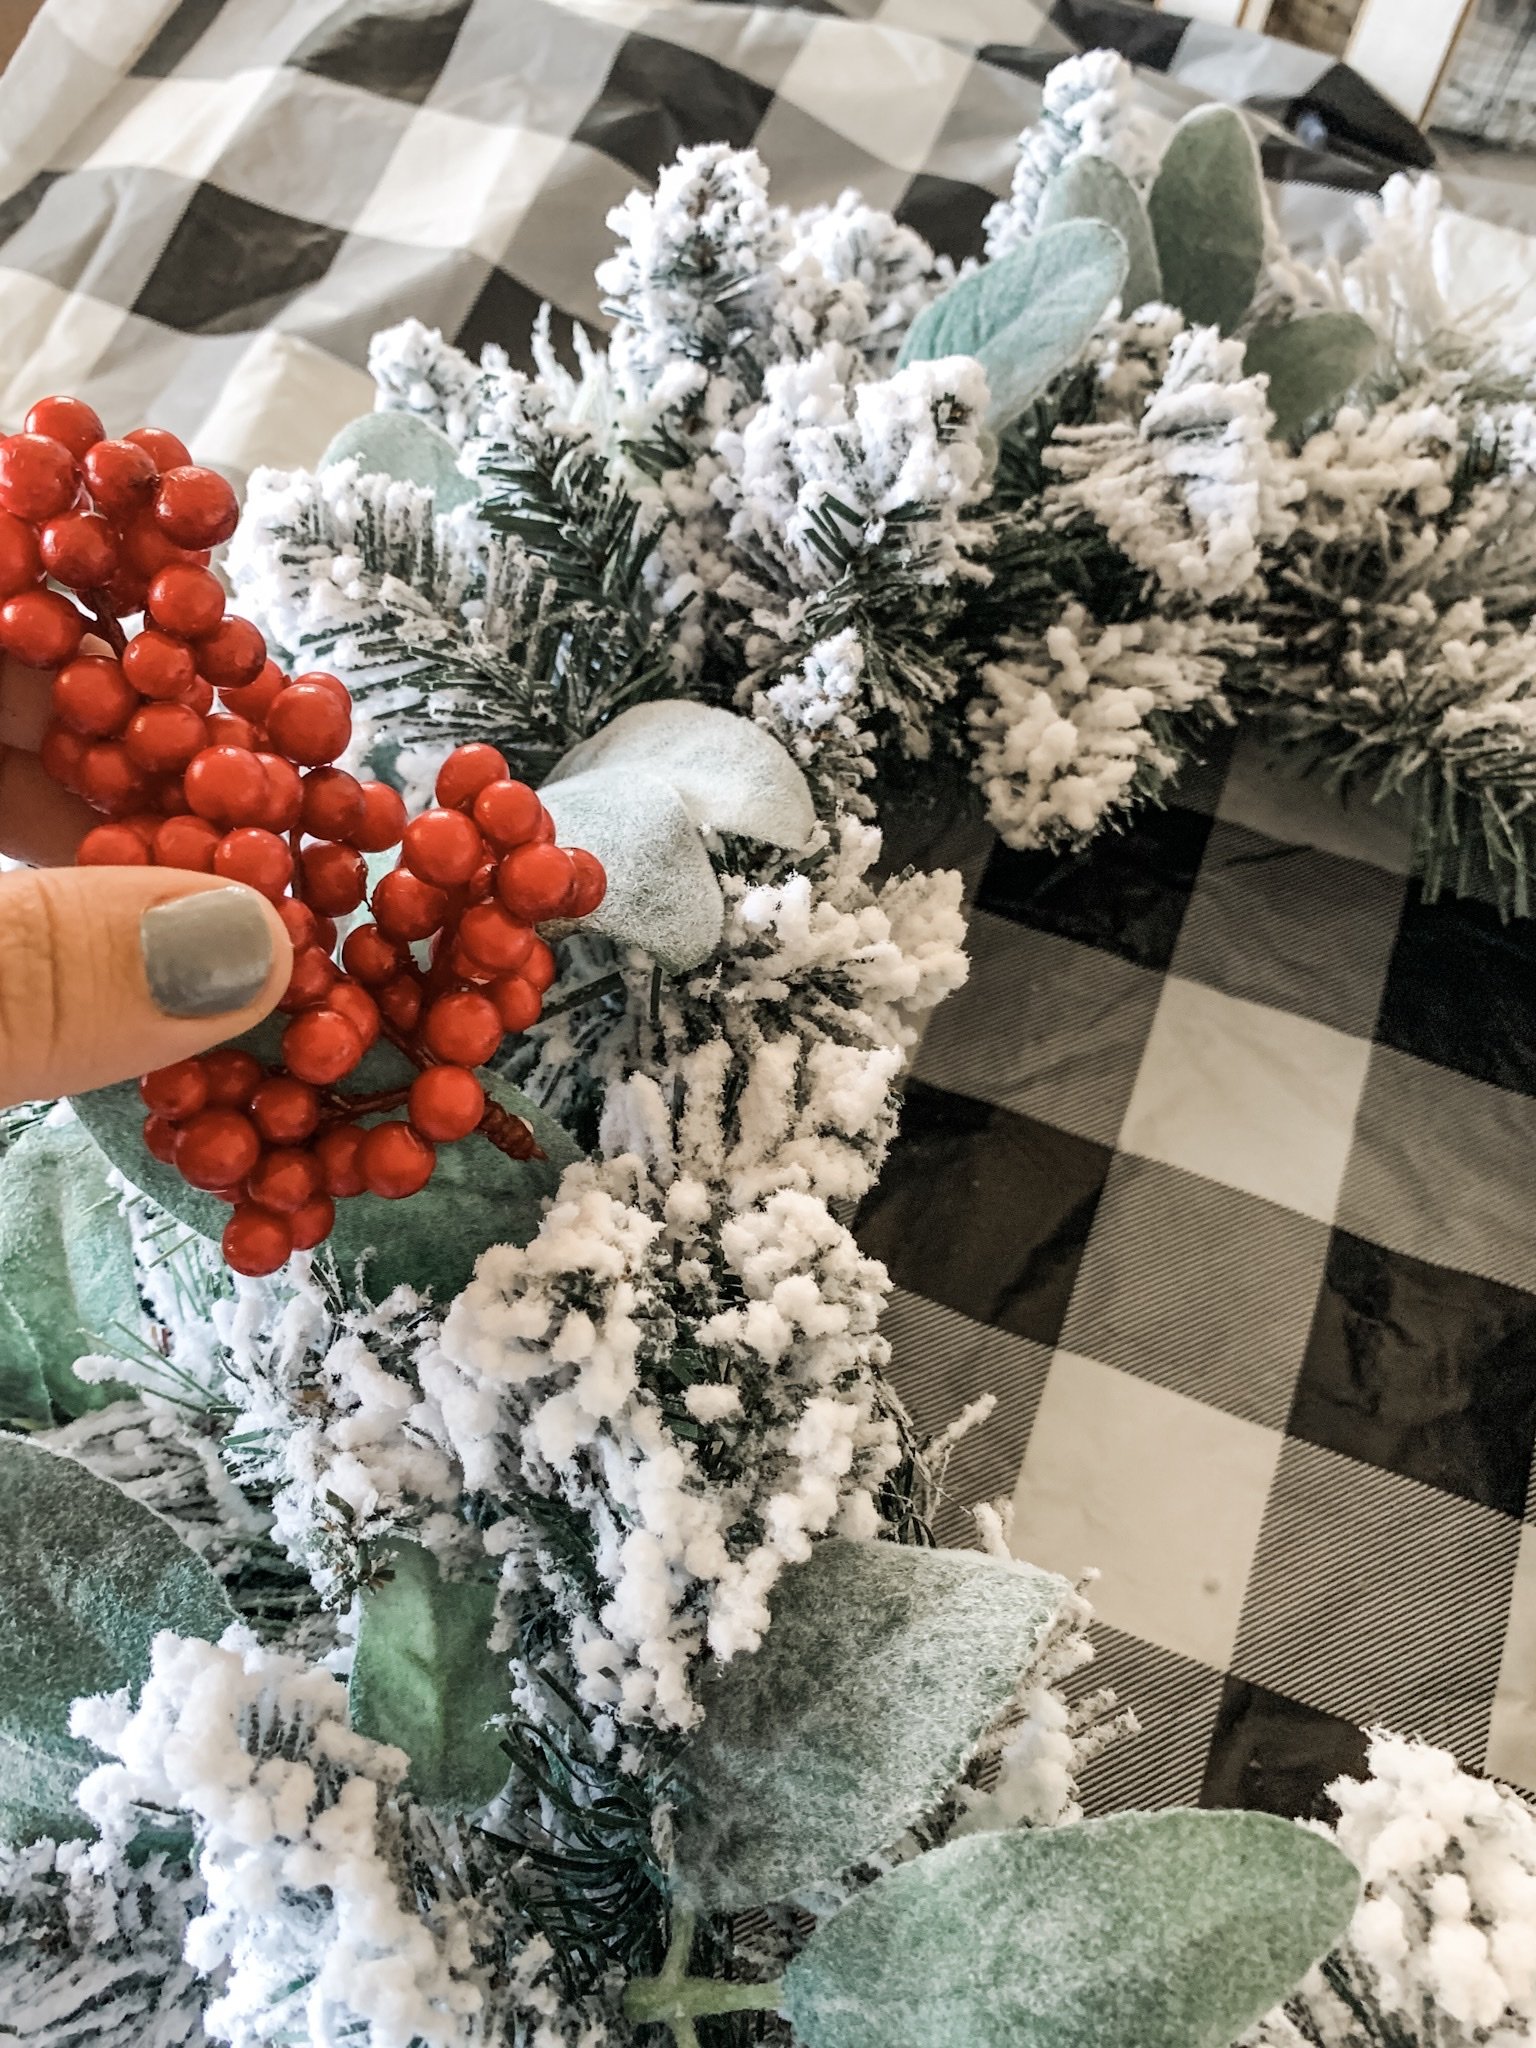 Flocked wreath idea for the holidays!